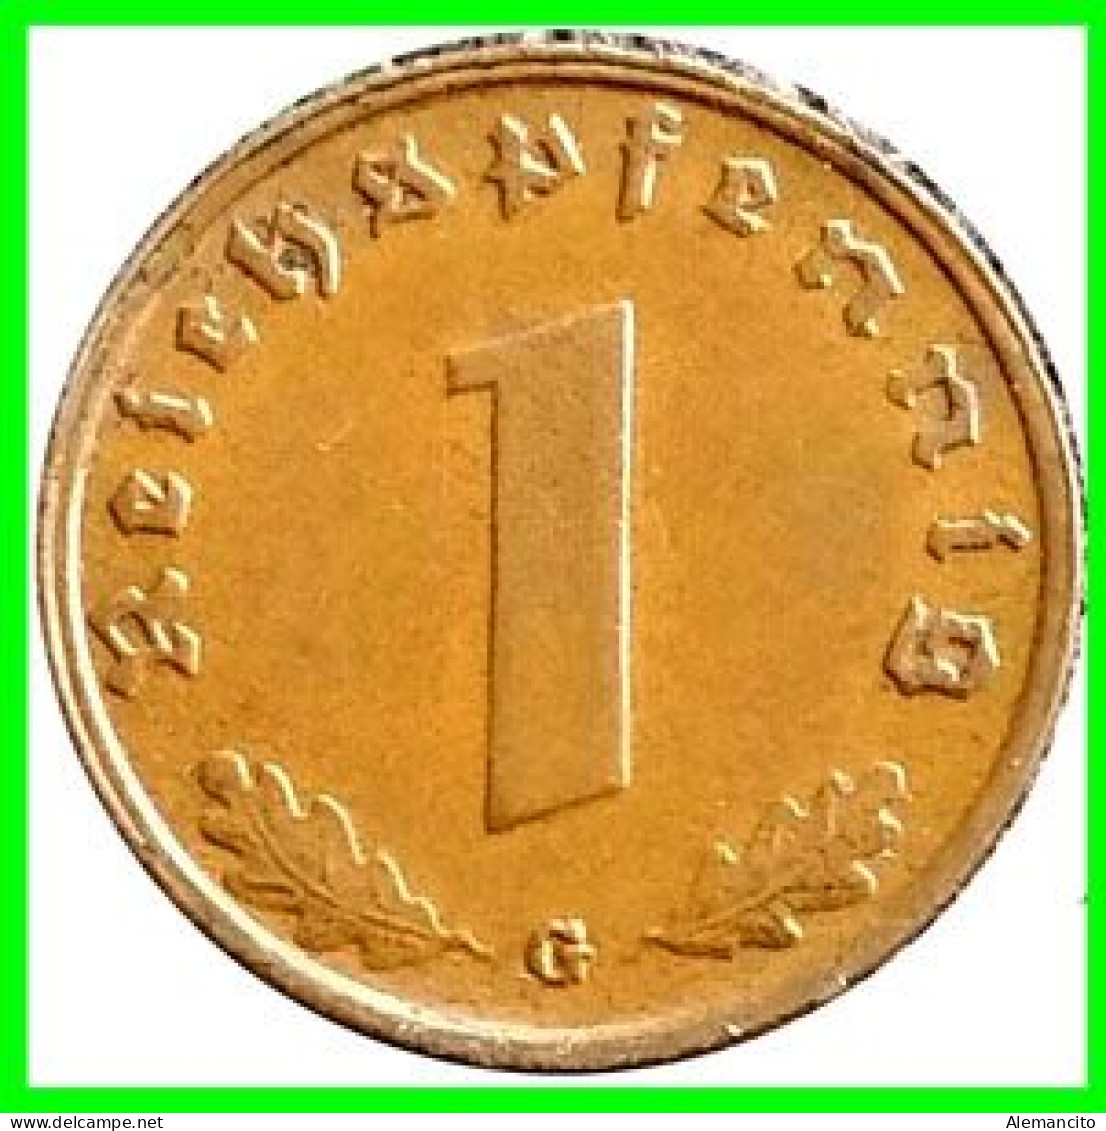 GERMANY - ALEMANIA DEUTFCHES REICH SERIE DE 4 MONEDAS DE 0.01 REICHSPFENNIG AÑO 1940 BRONCE 2ª GUERRA MUNDIAL - 1 Reichspfennig